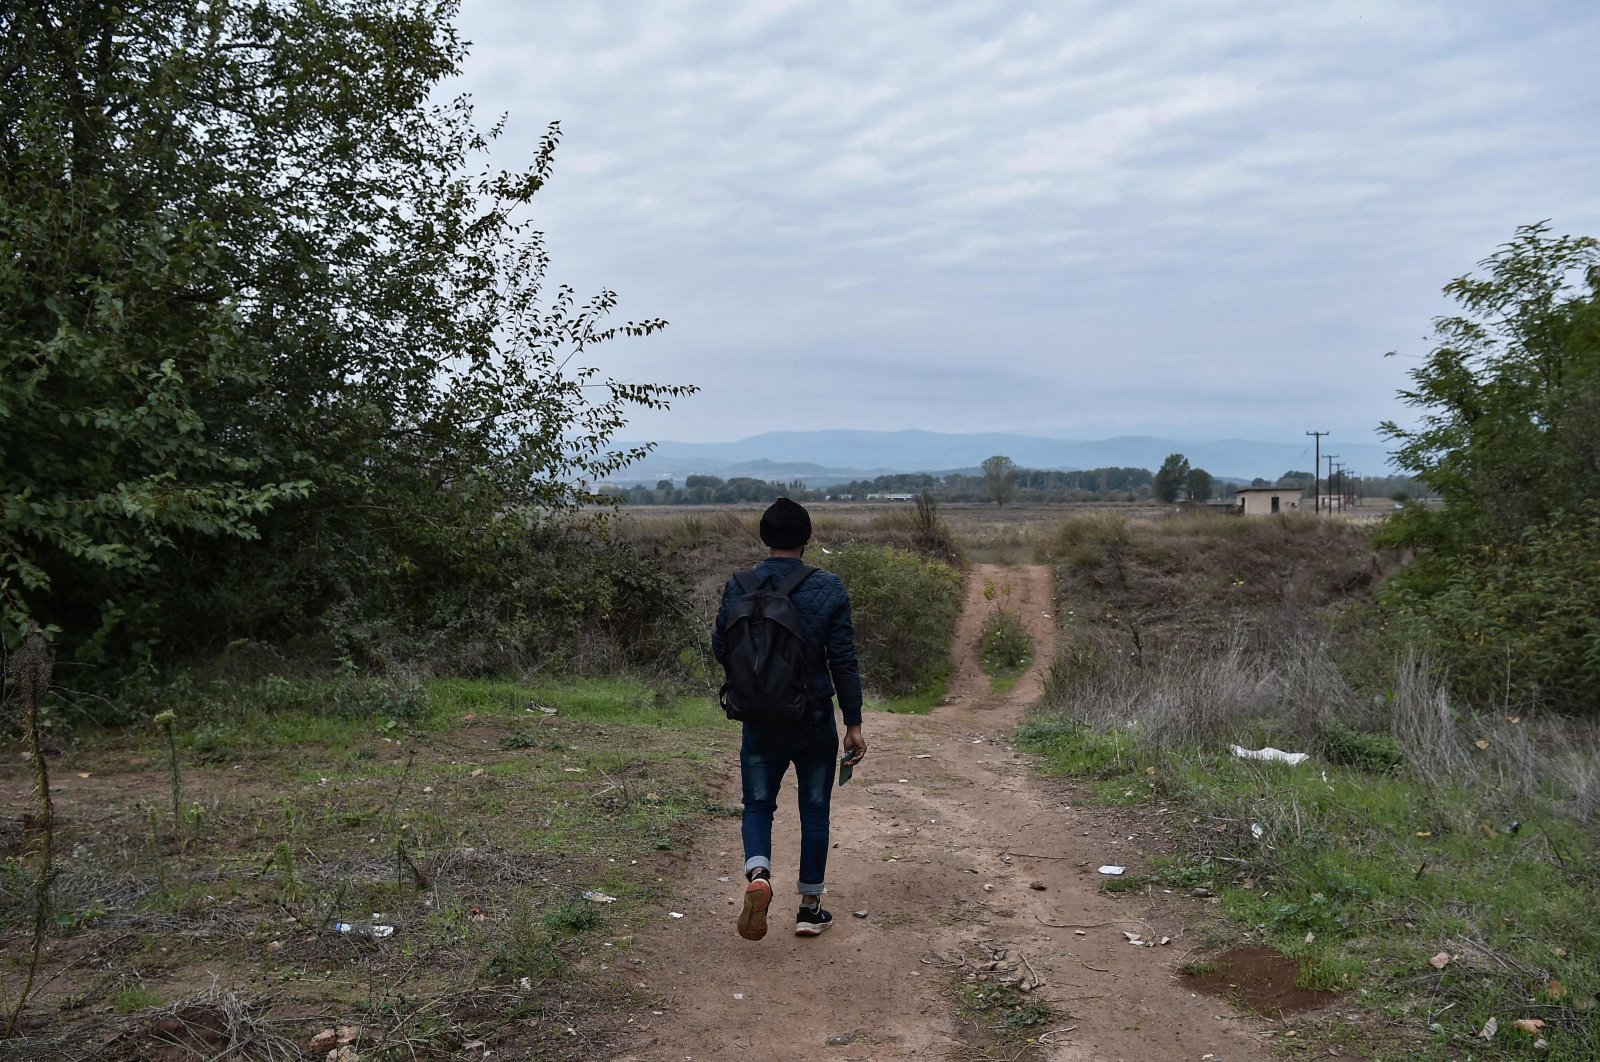 Yunani membawa 2 aktivis ke pengadilan karena menyelamatkan para migran